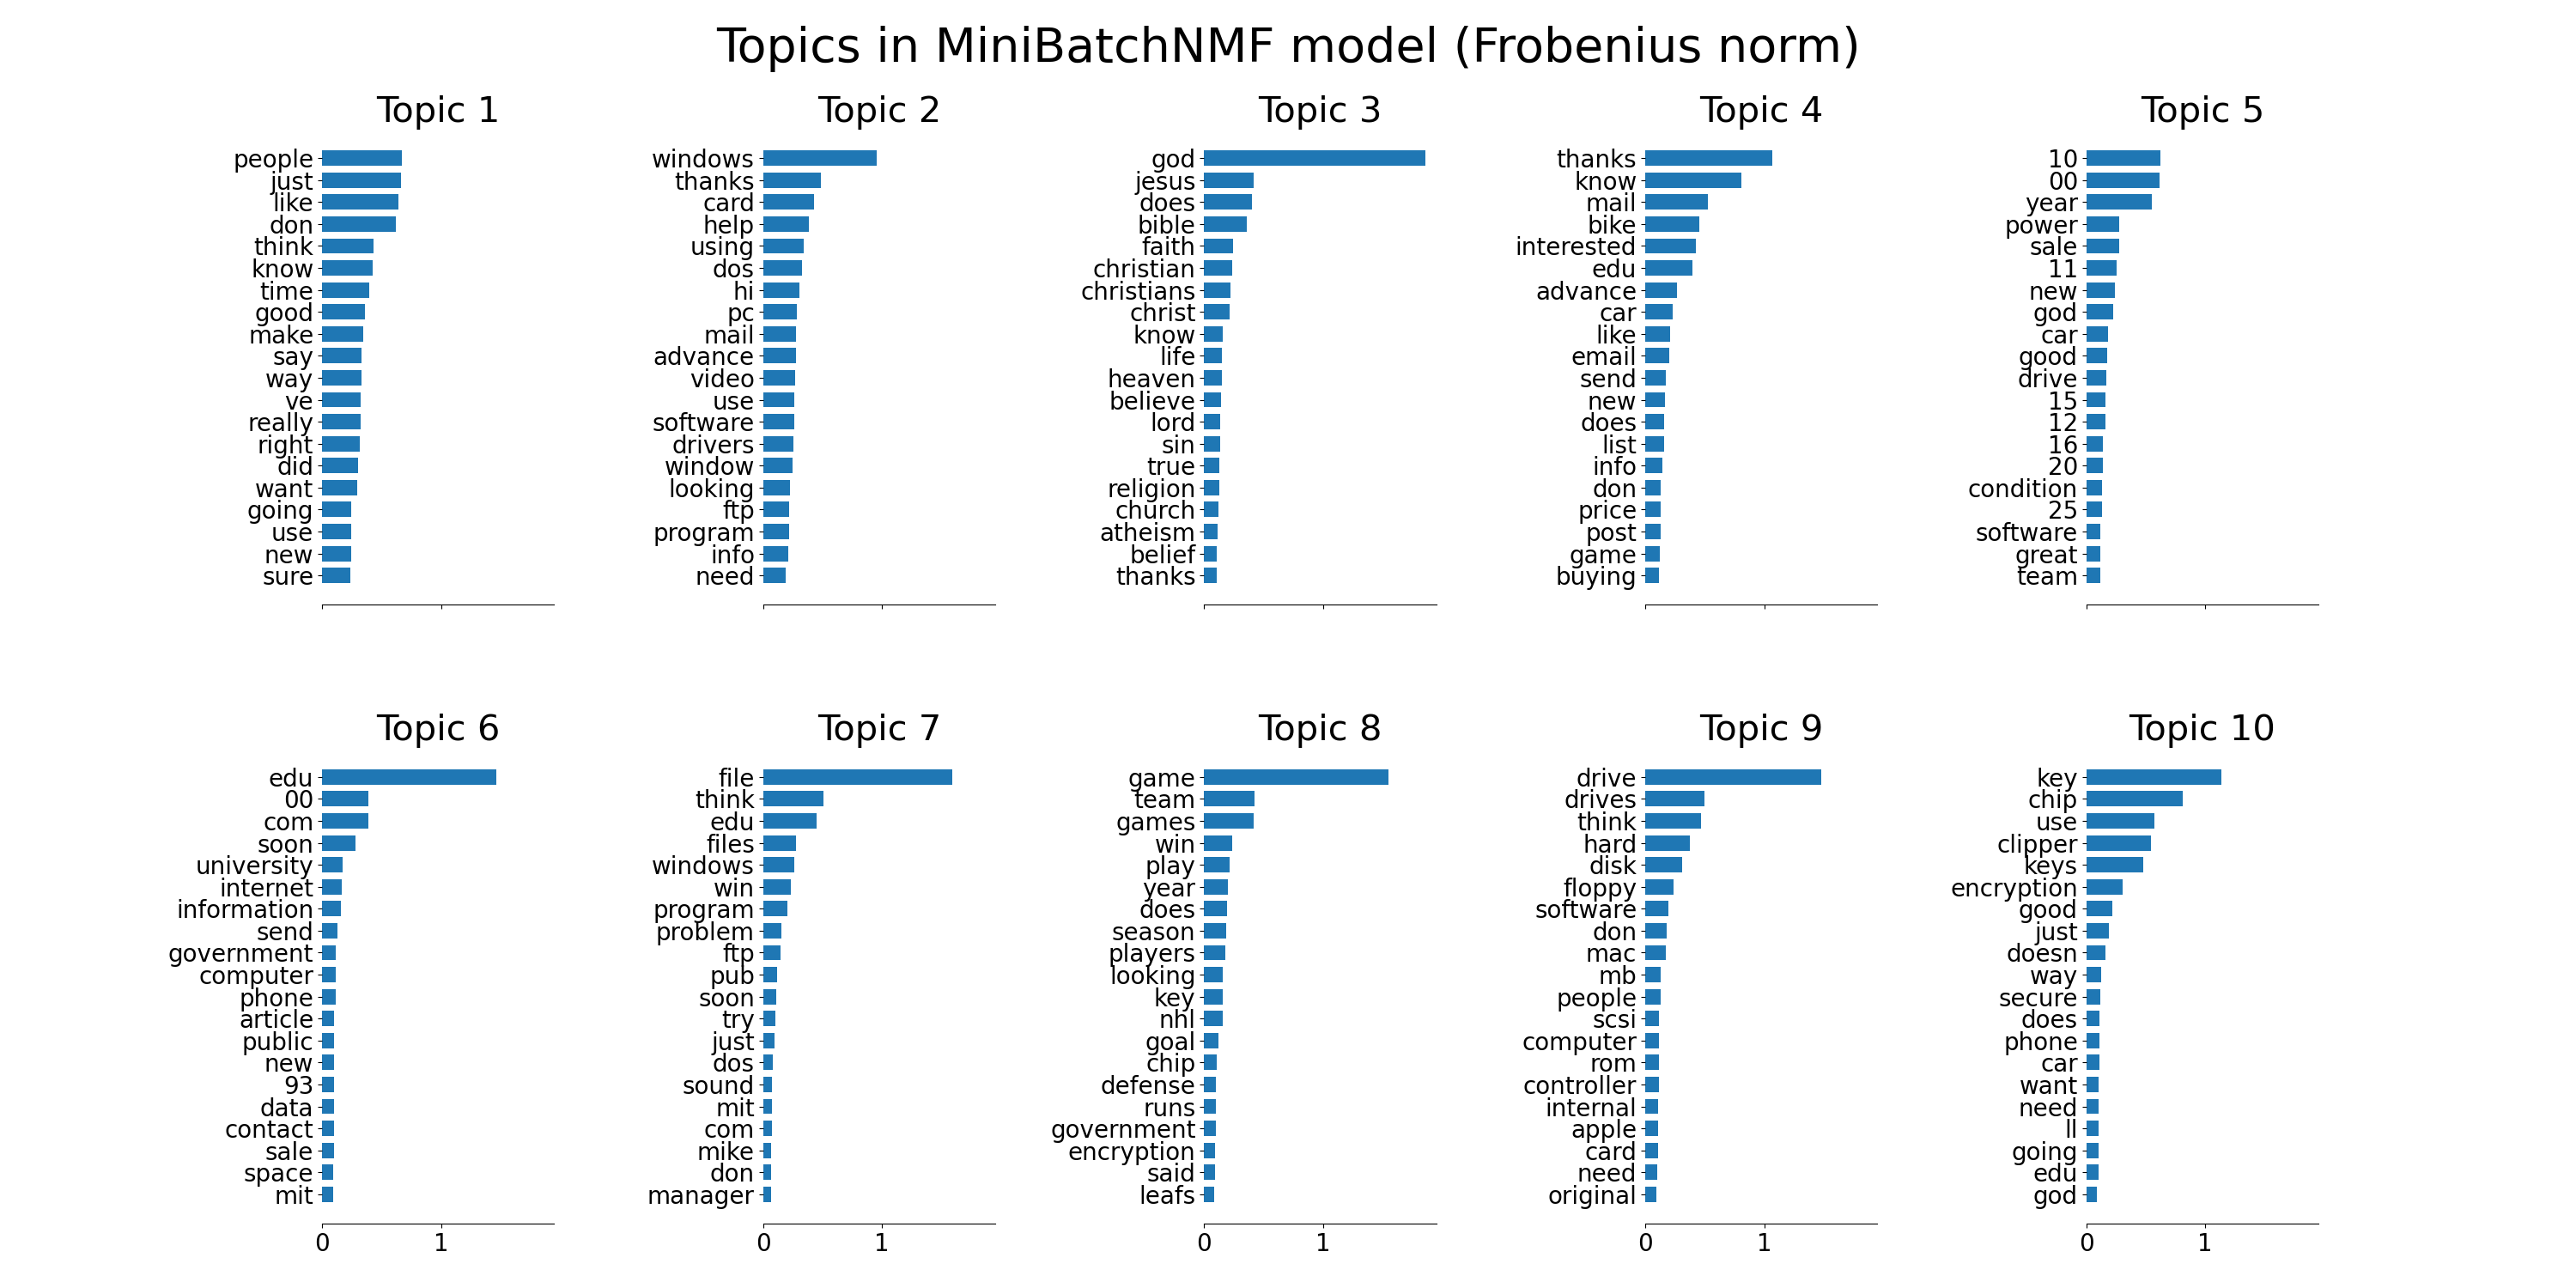 Topics in MiniBatchNMF model (Frobenius norm), Topic 1, Topic 2, Topic 3, Topic 4, Topic 5, Topic 6, Topic 7, Topic 8, Topic 9, Topic 10